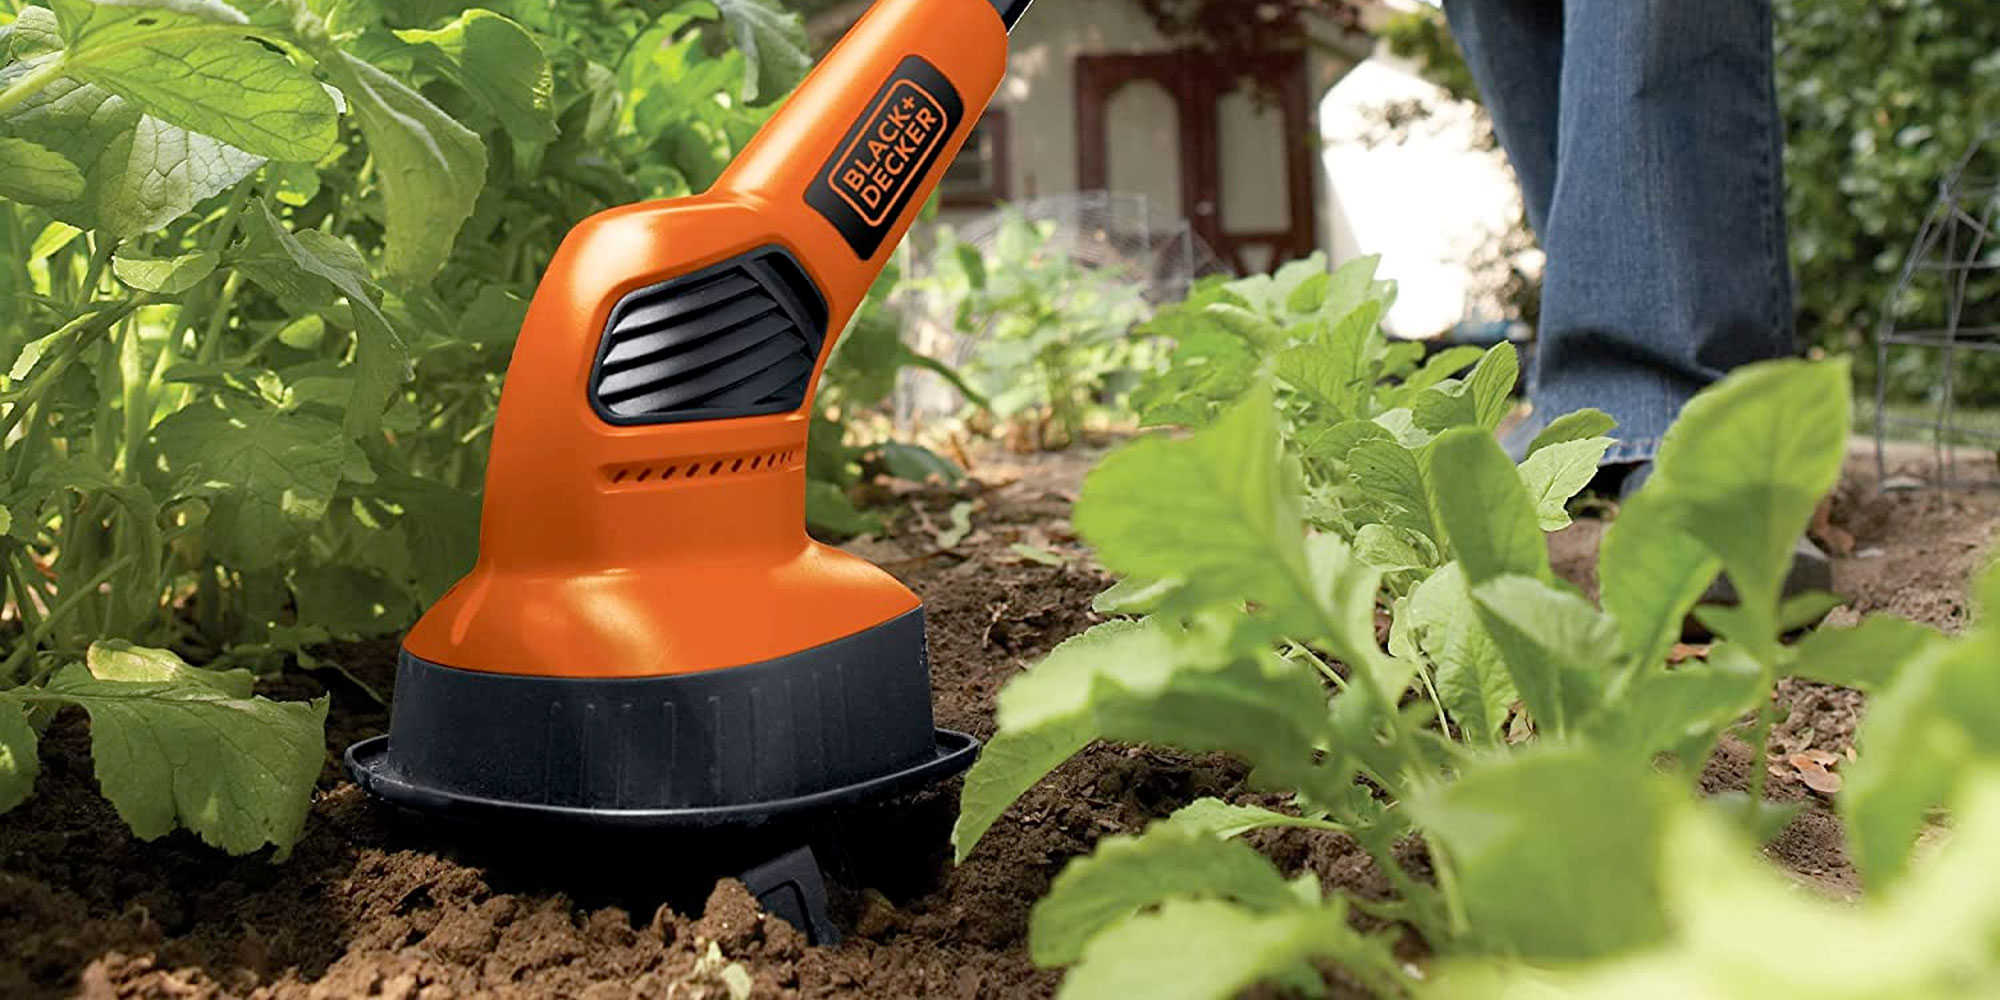 Black + Decker 20V Max Tiller breaks up soil to nourish your flower beds  for $66 (Reg. $114+)